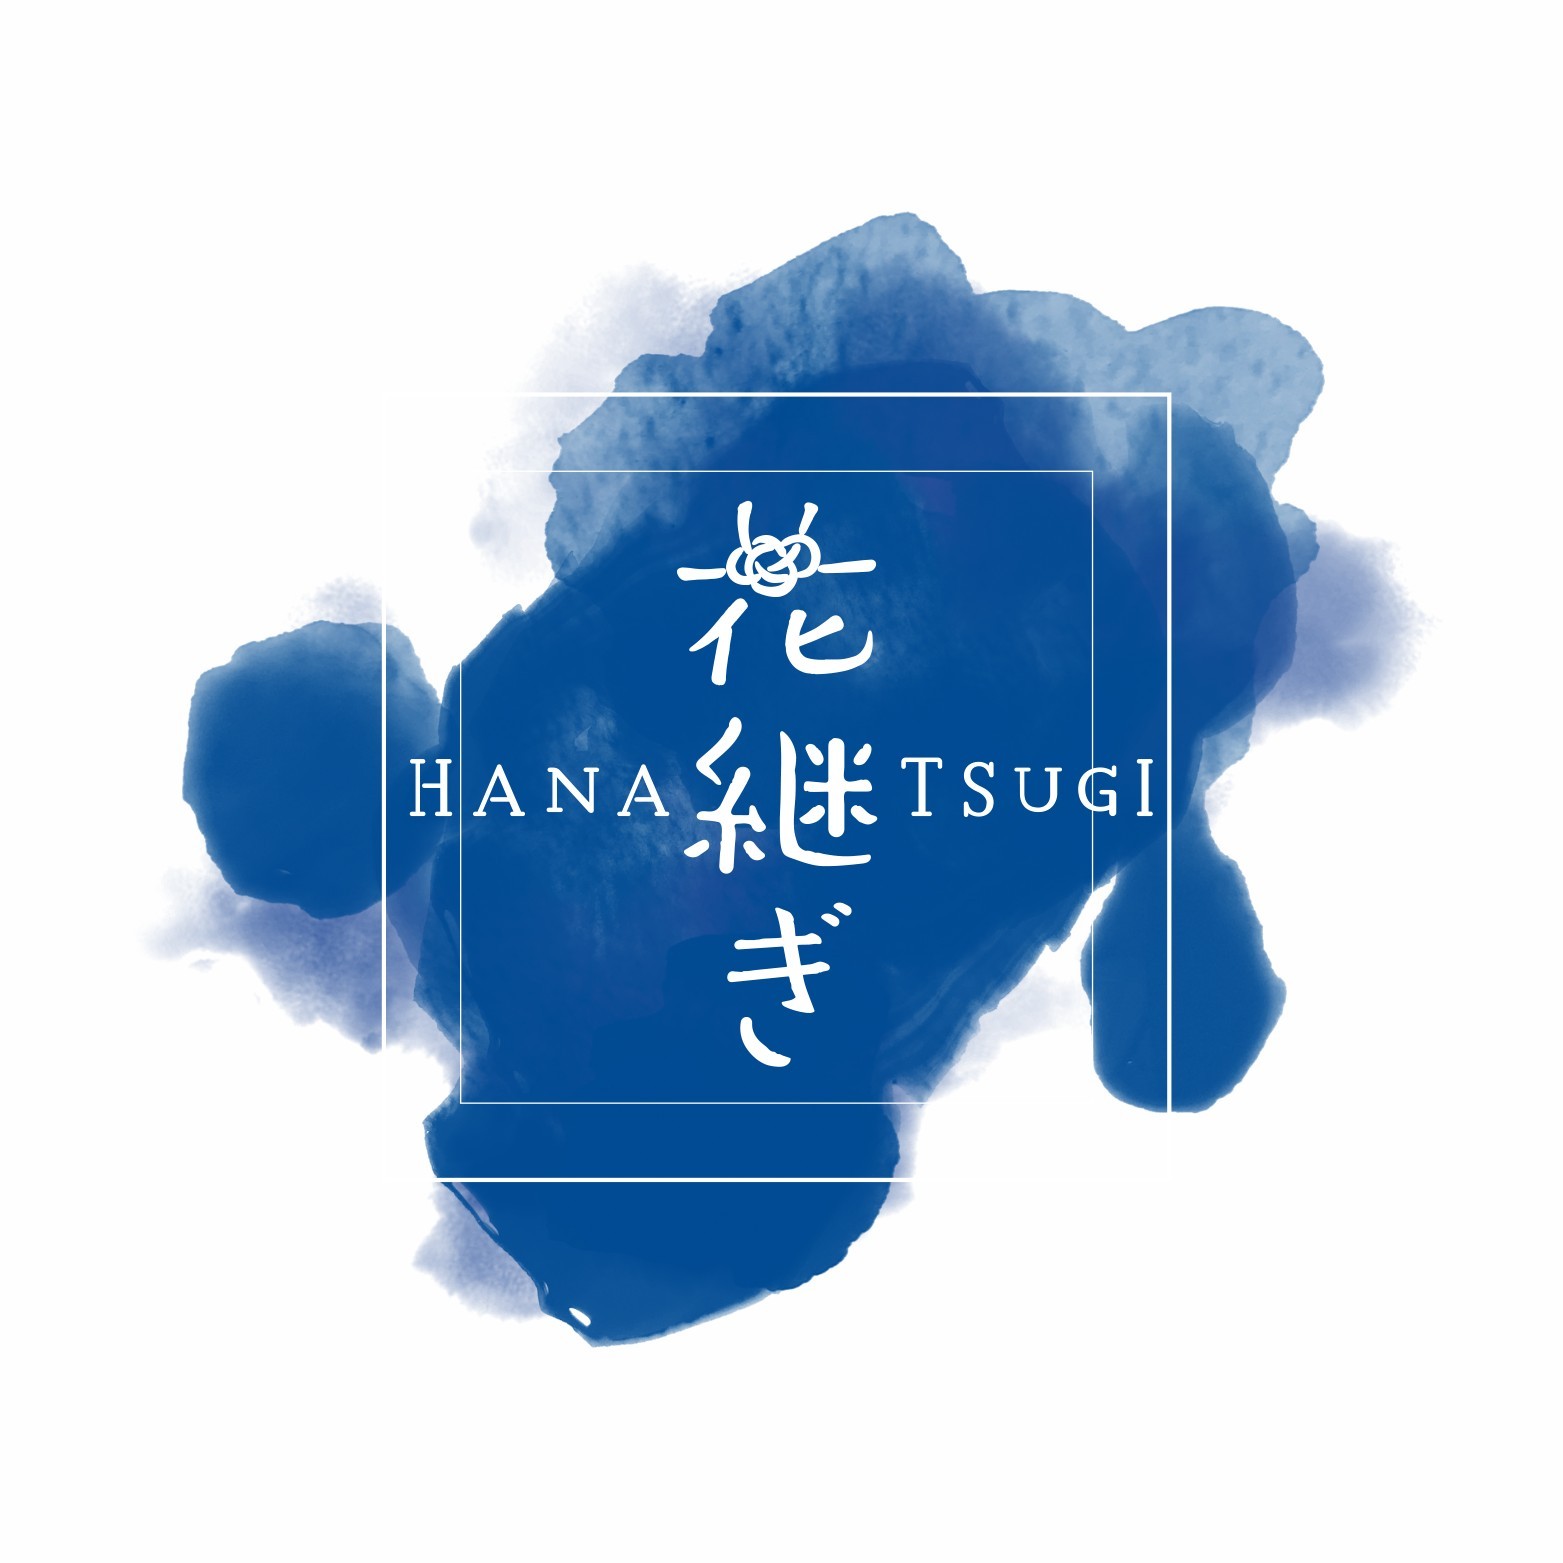 Hanatsugi